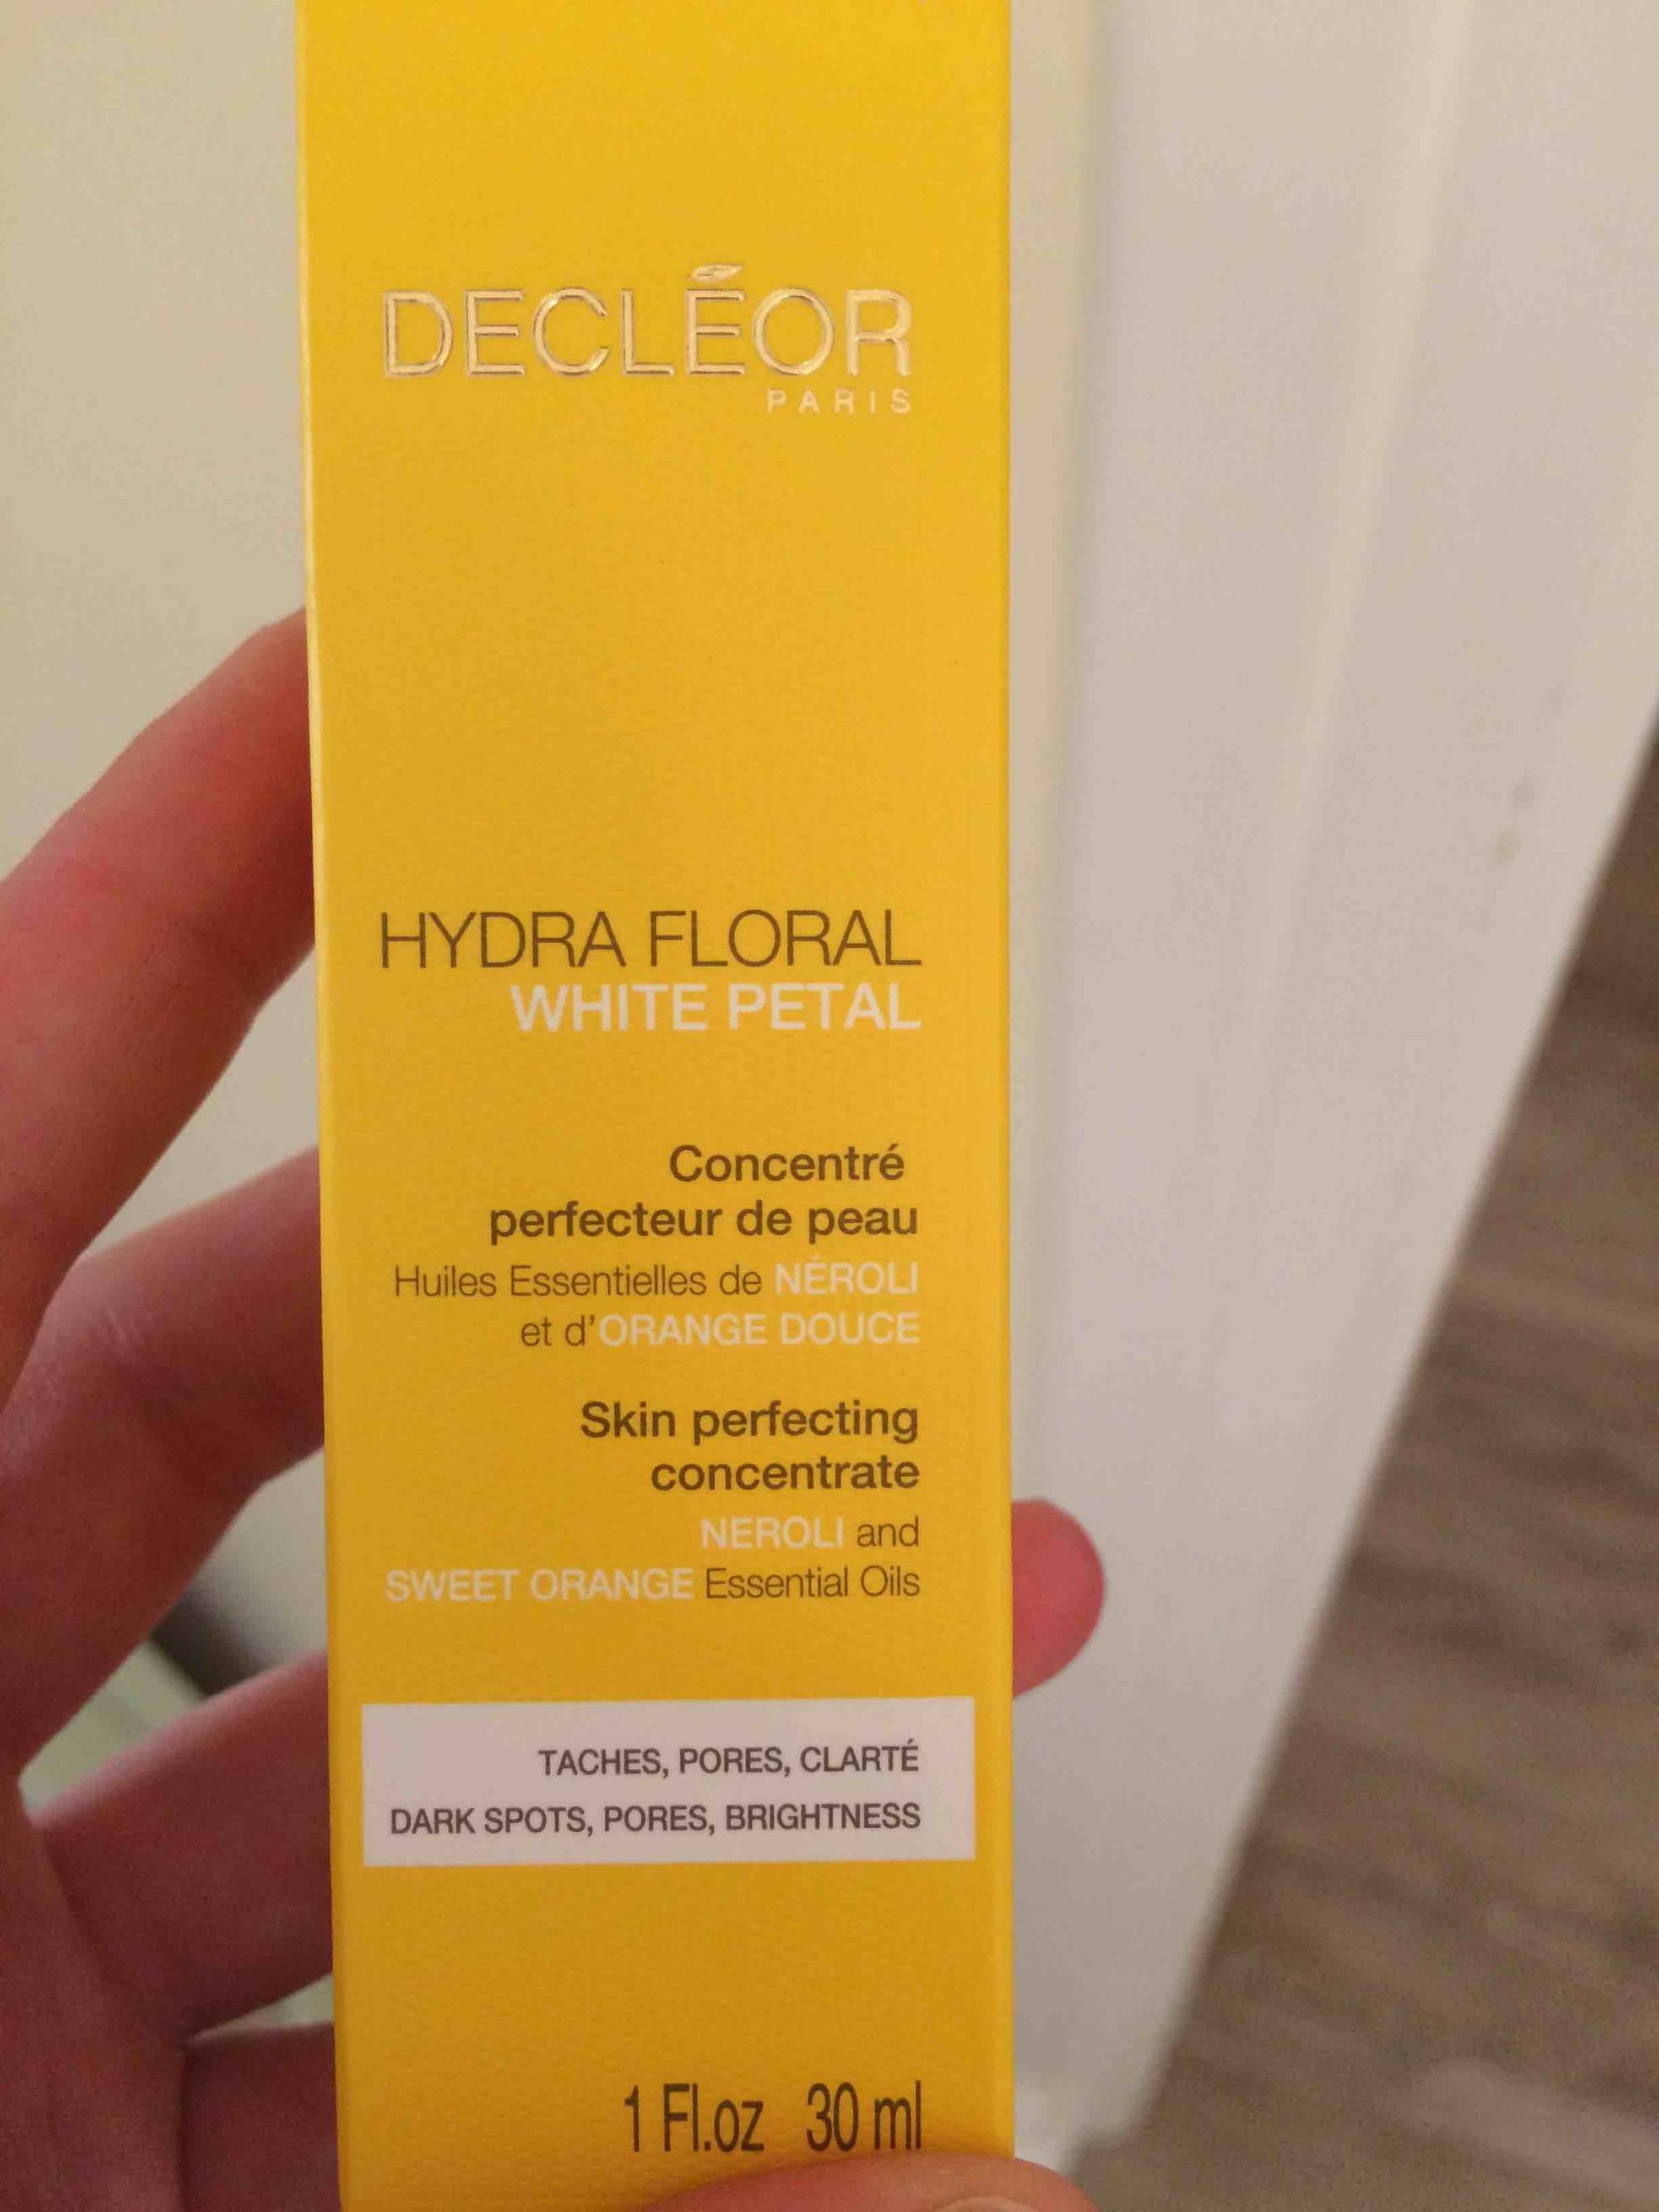 DECLÉOR - Hydra floral white petal - Concentré perfecteur de peau